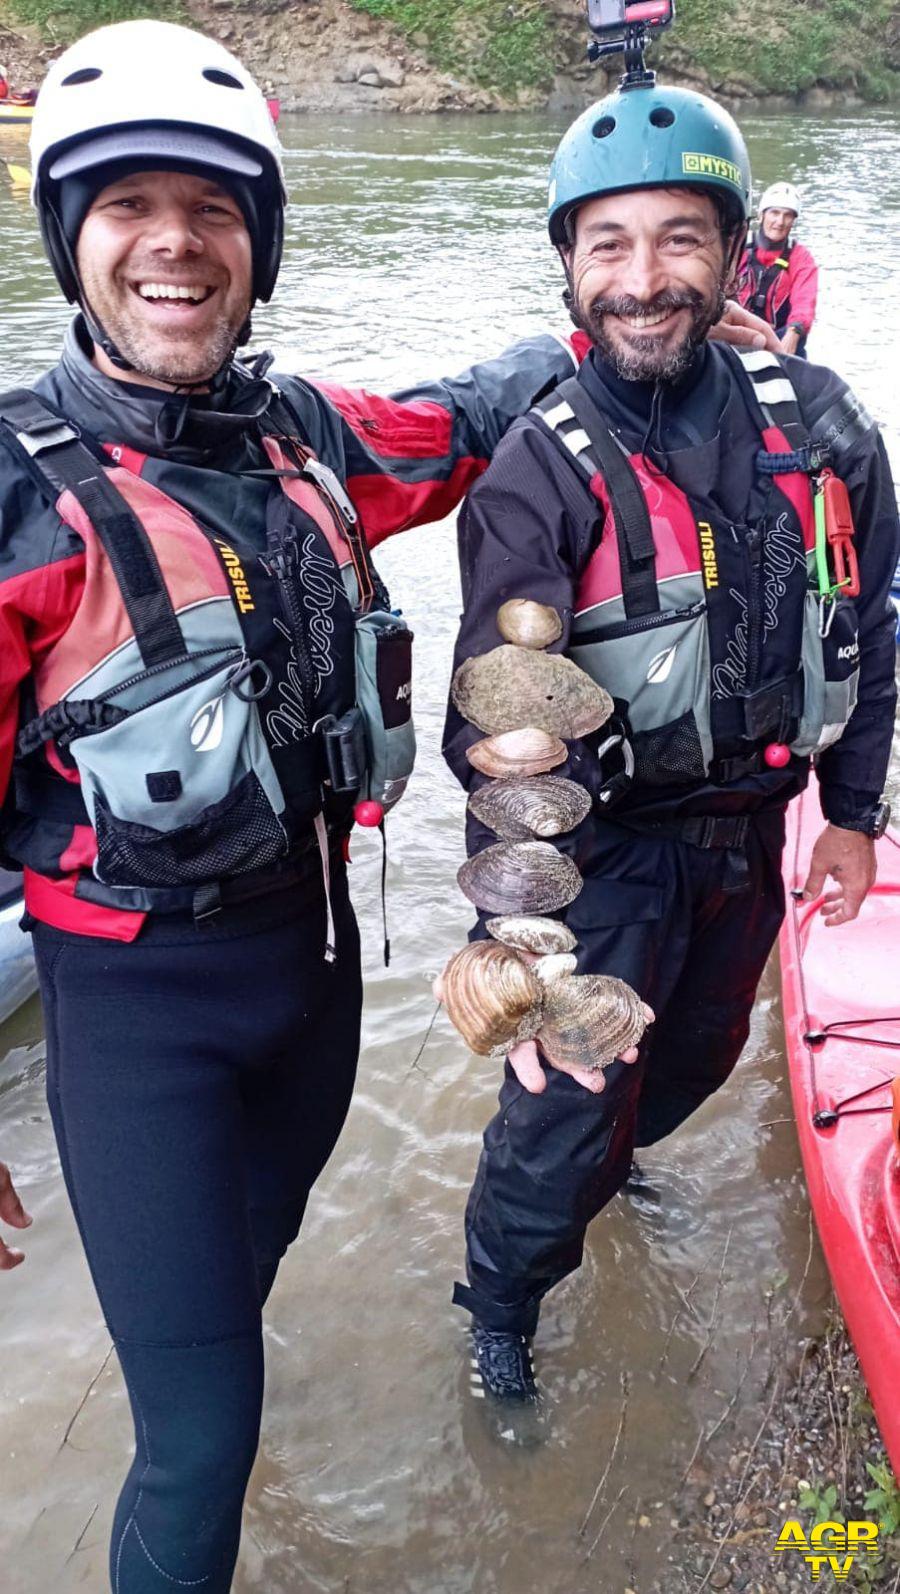 #teveremolluschifantastici ricerca molluschi sul fiume Tevere